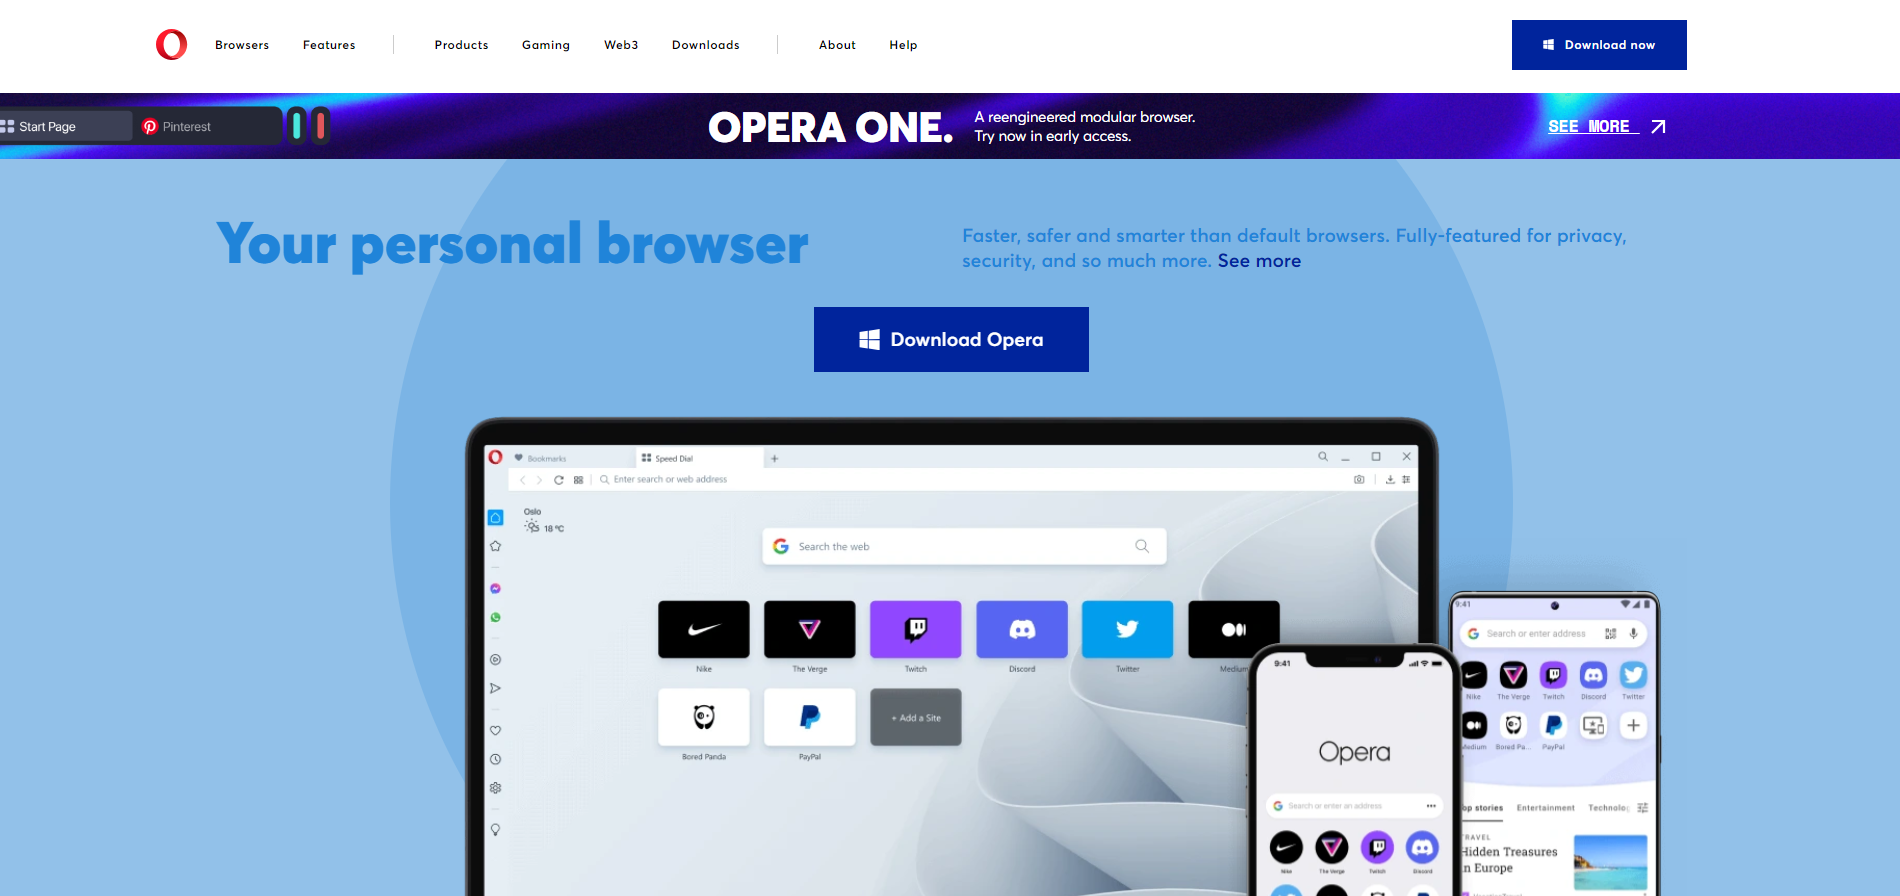 Оновлення Opera пропонують нові можливості для обміну даними та спілкування